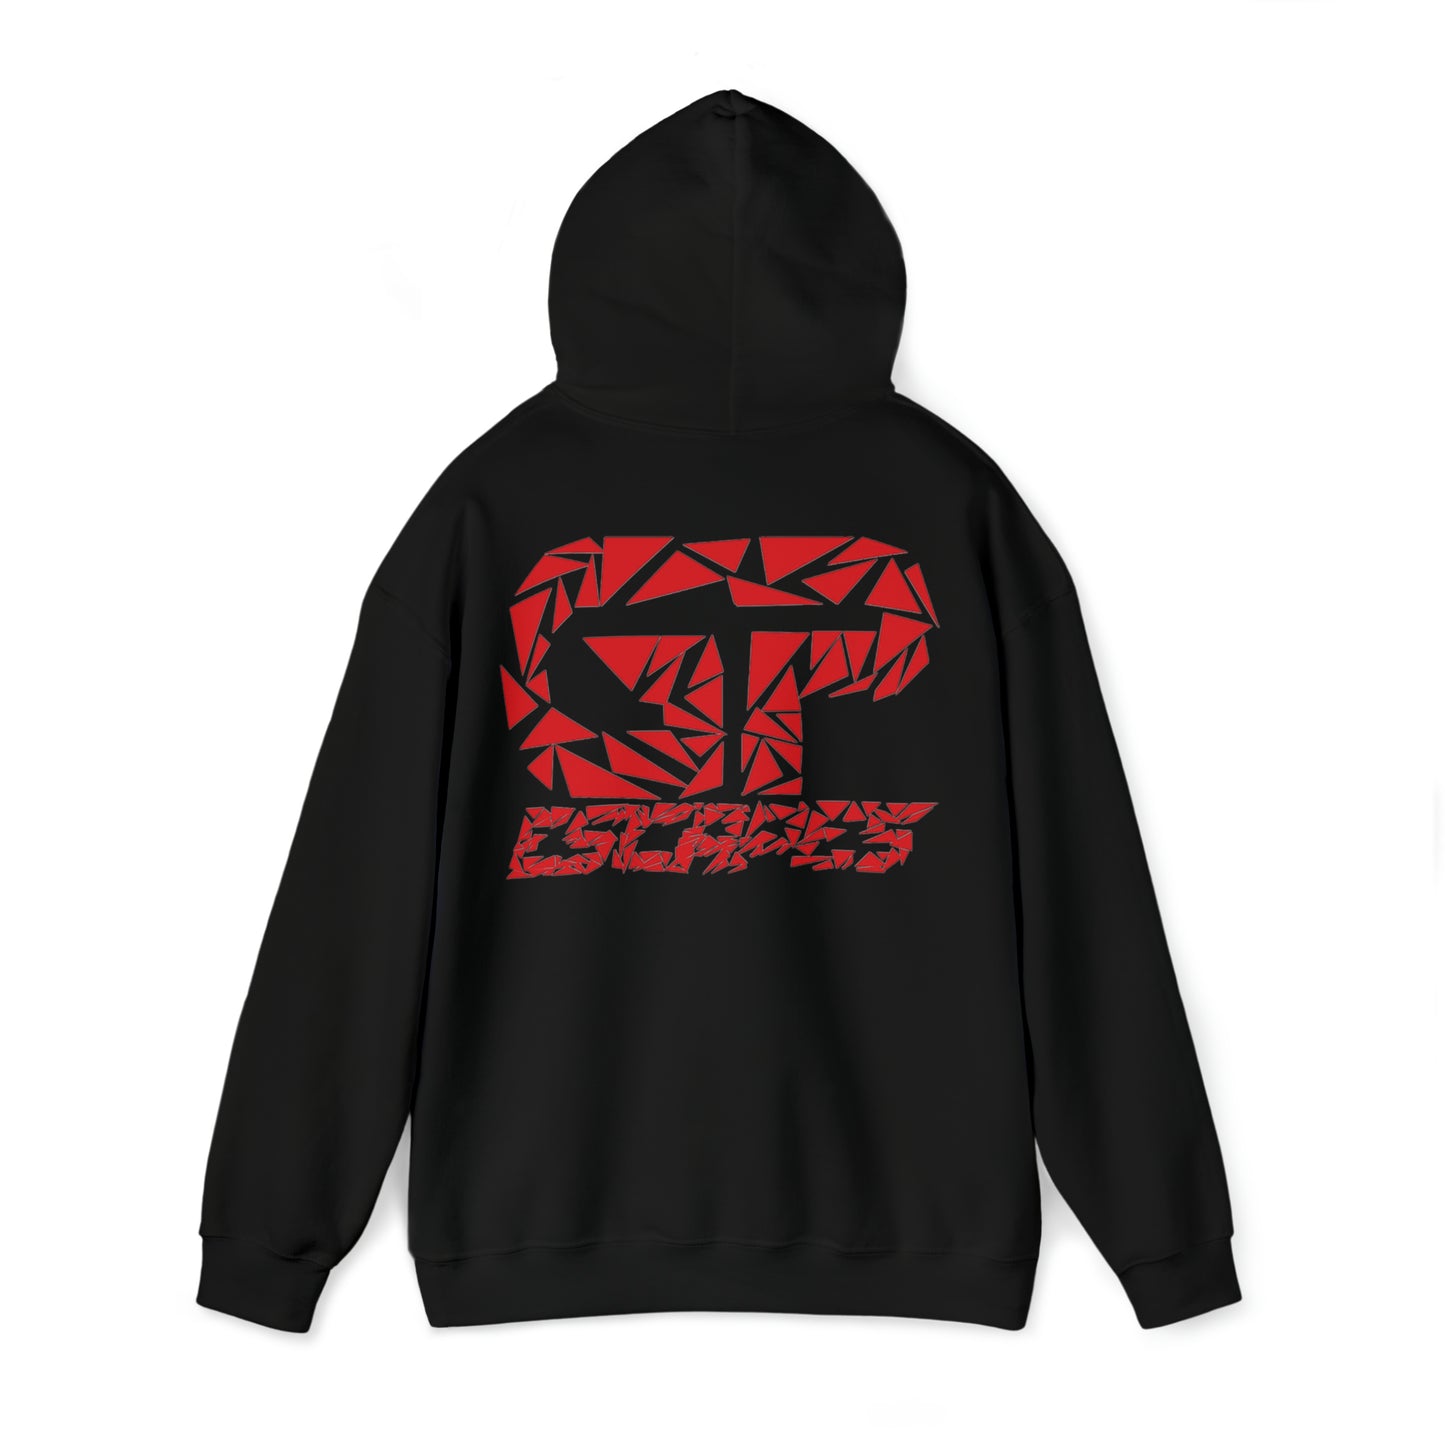 EscapesGP black hoodie